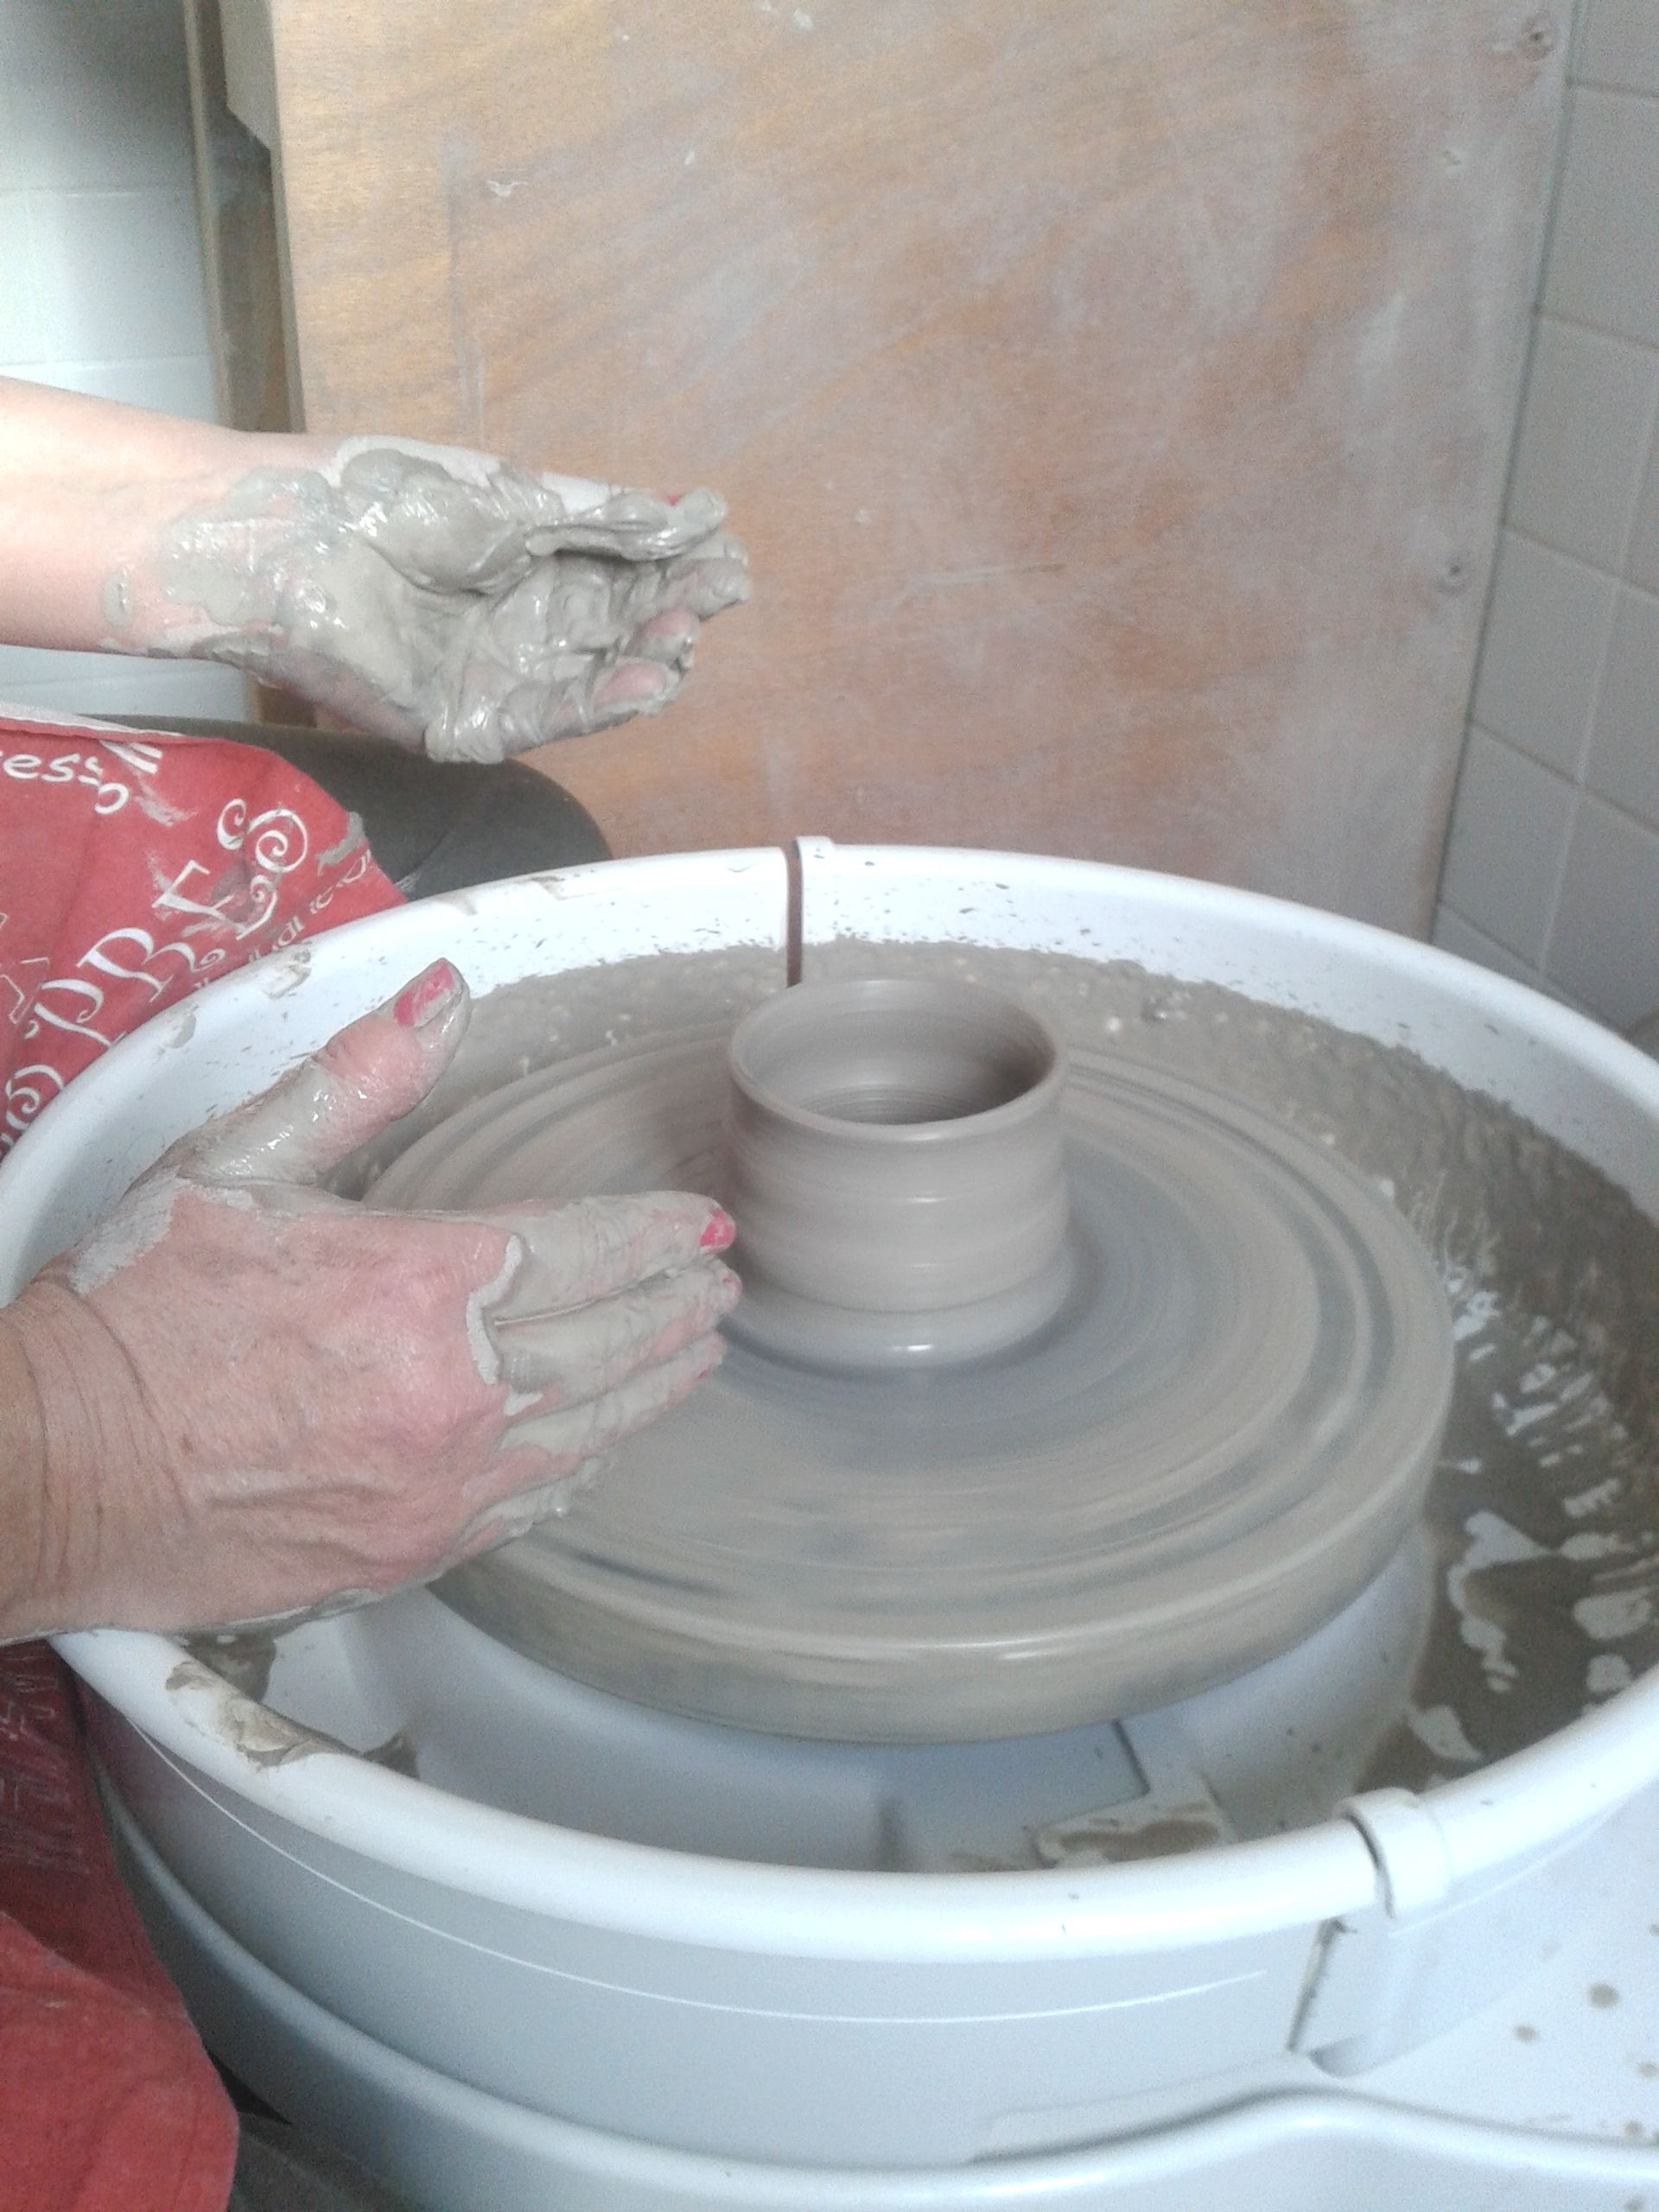 Initiation au tournage de poteries : bien démarrer sur le tour